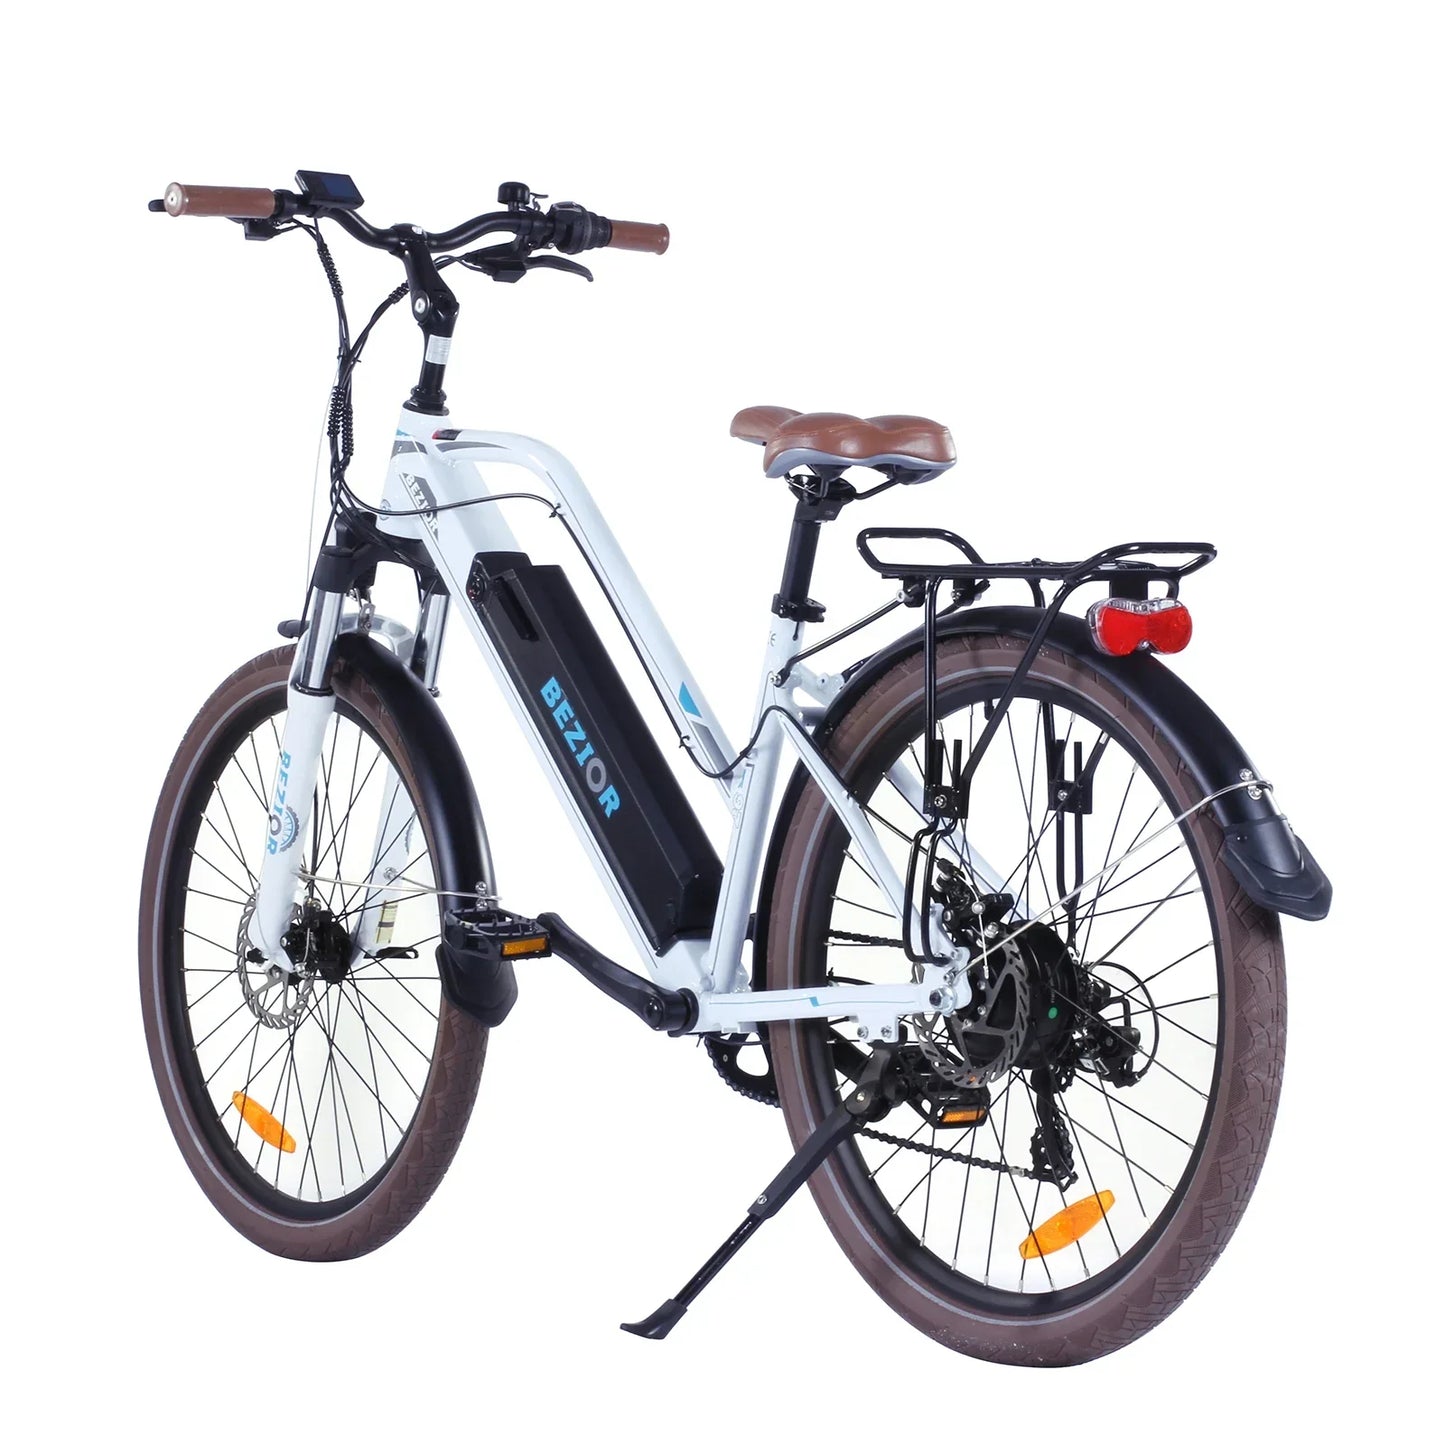 Bezior M2 Pro Electric Bike